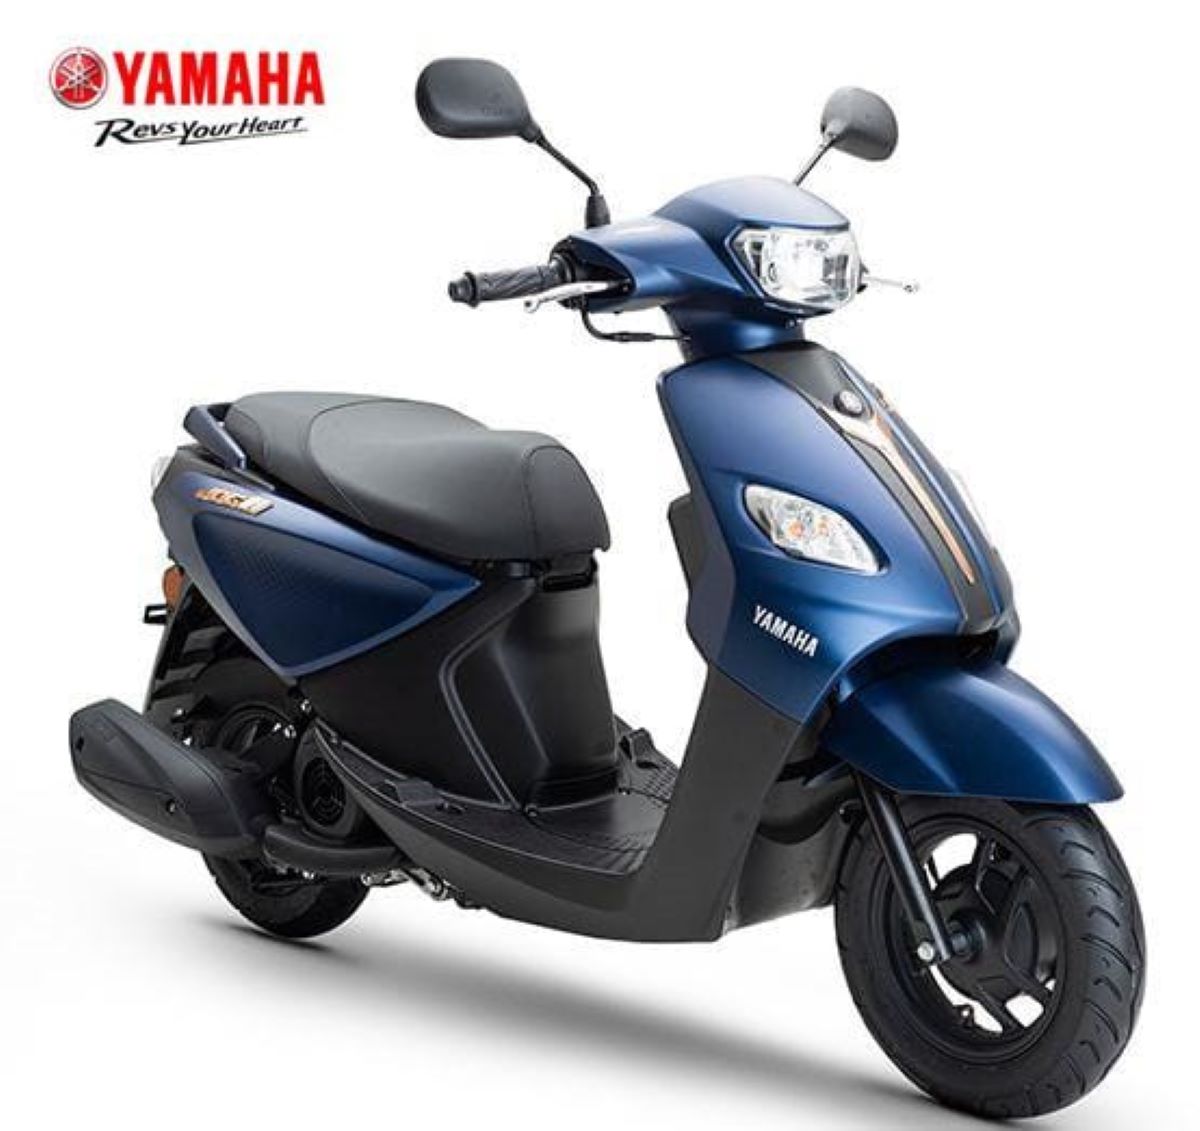 Tugas Honda BeAT Makin Berat, Yamaha Luncurkan Motor Matic 125cc Terbaru